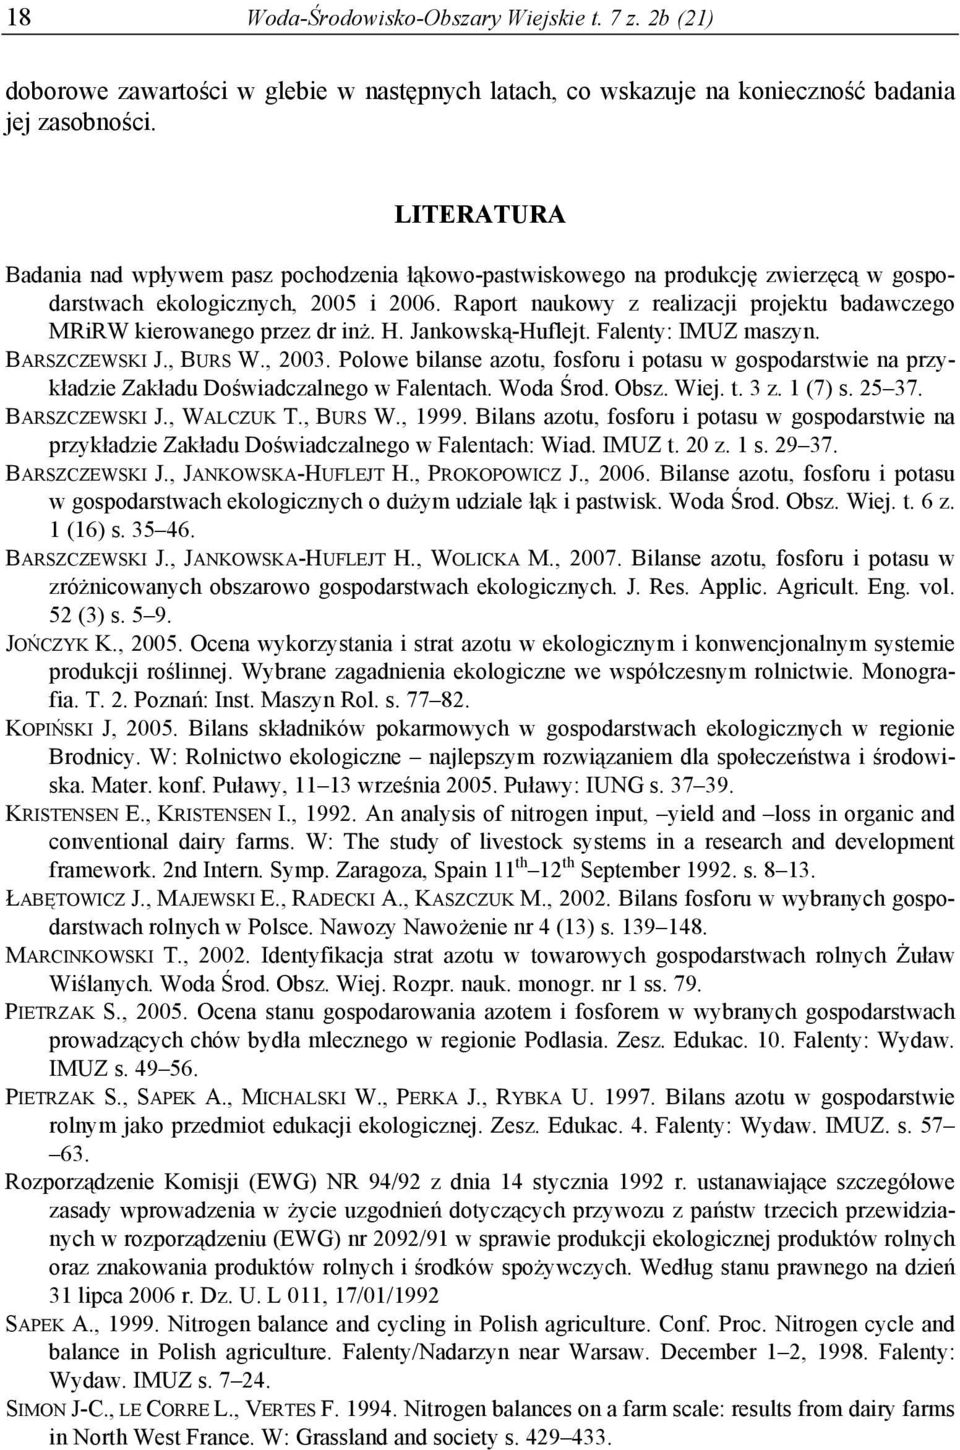 Raport naukowy z realizacji projektu badawczego MRiRW kierowanego przez dr inż. H. Jankowską-Huflejt. Falenty: IMUZ maszyn. BARSZCZEWSKI J., BURS W., 3.